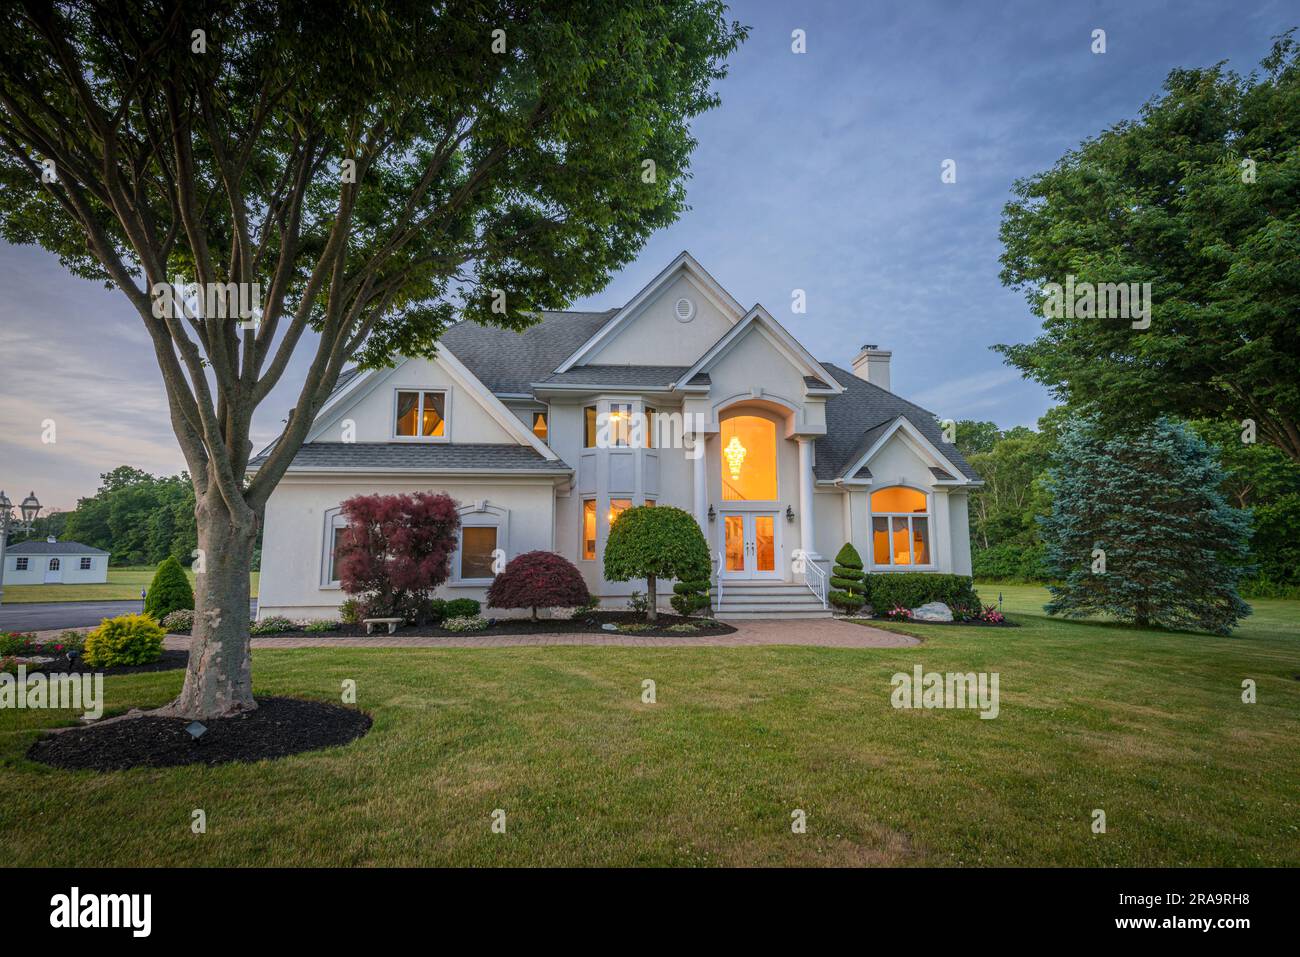 American Rural suburban single family home, Pennsylvania USA Stock Photo